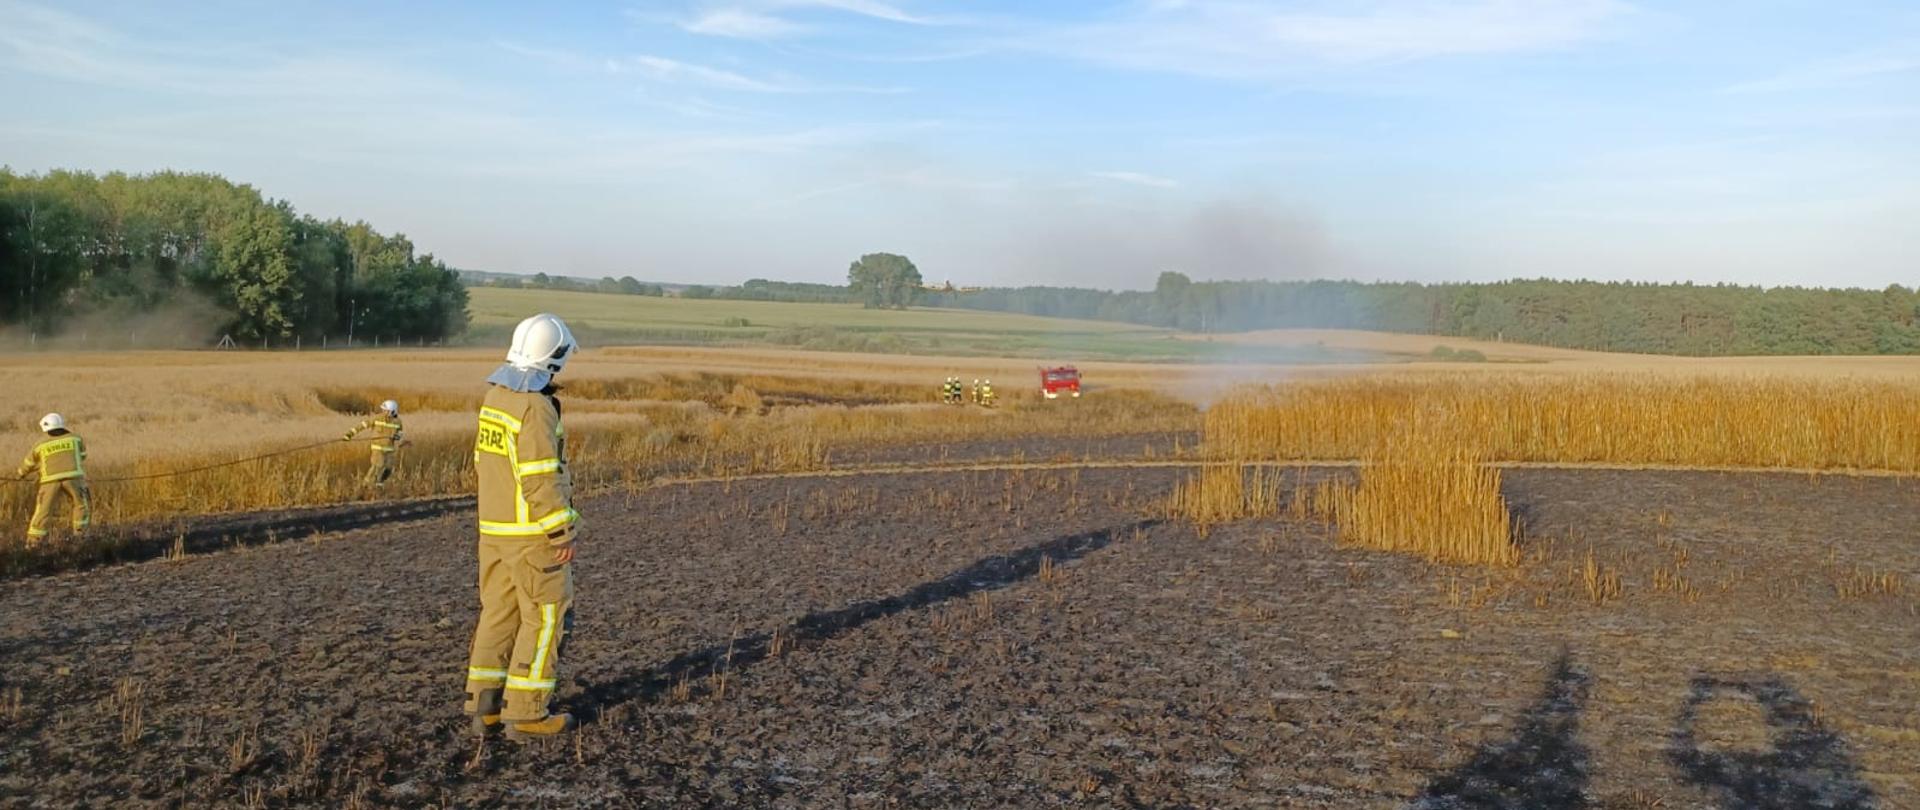 Na zdjęciu widać strażaków oraz samochód gaśniczy podczas działań na polu rolniczym.